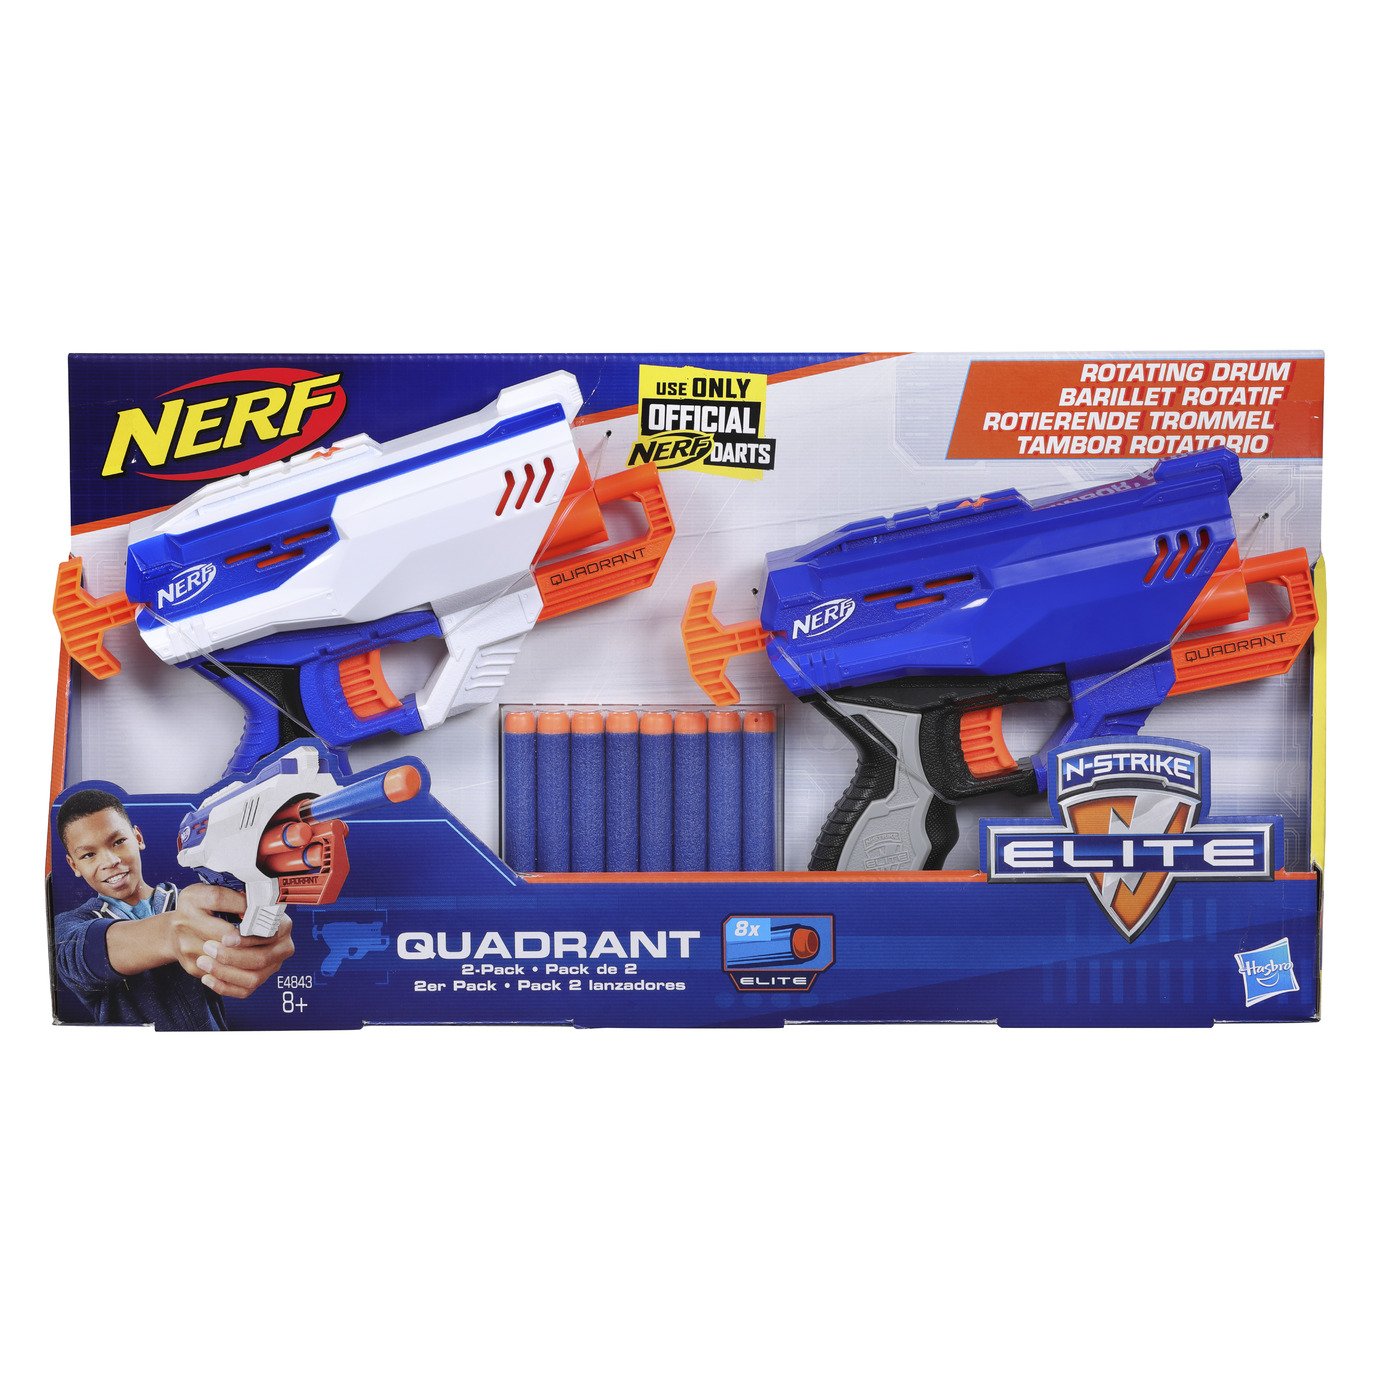 Nerf Quadrant Blaster 2 Pack Review